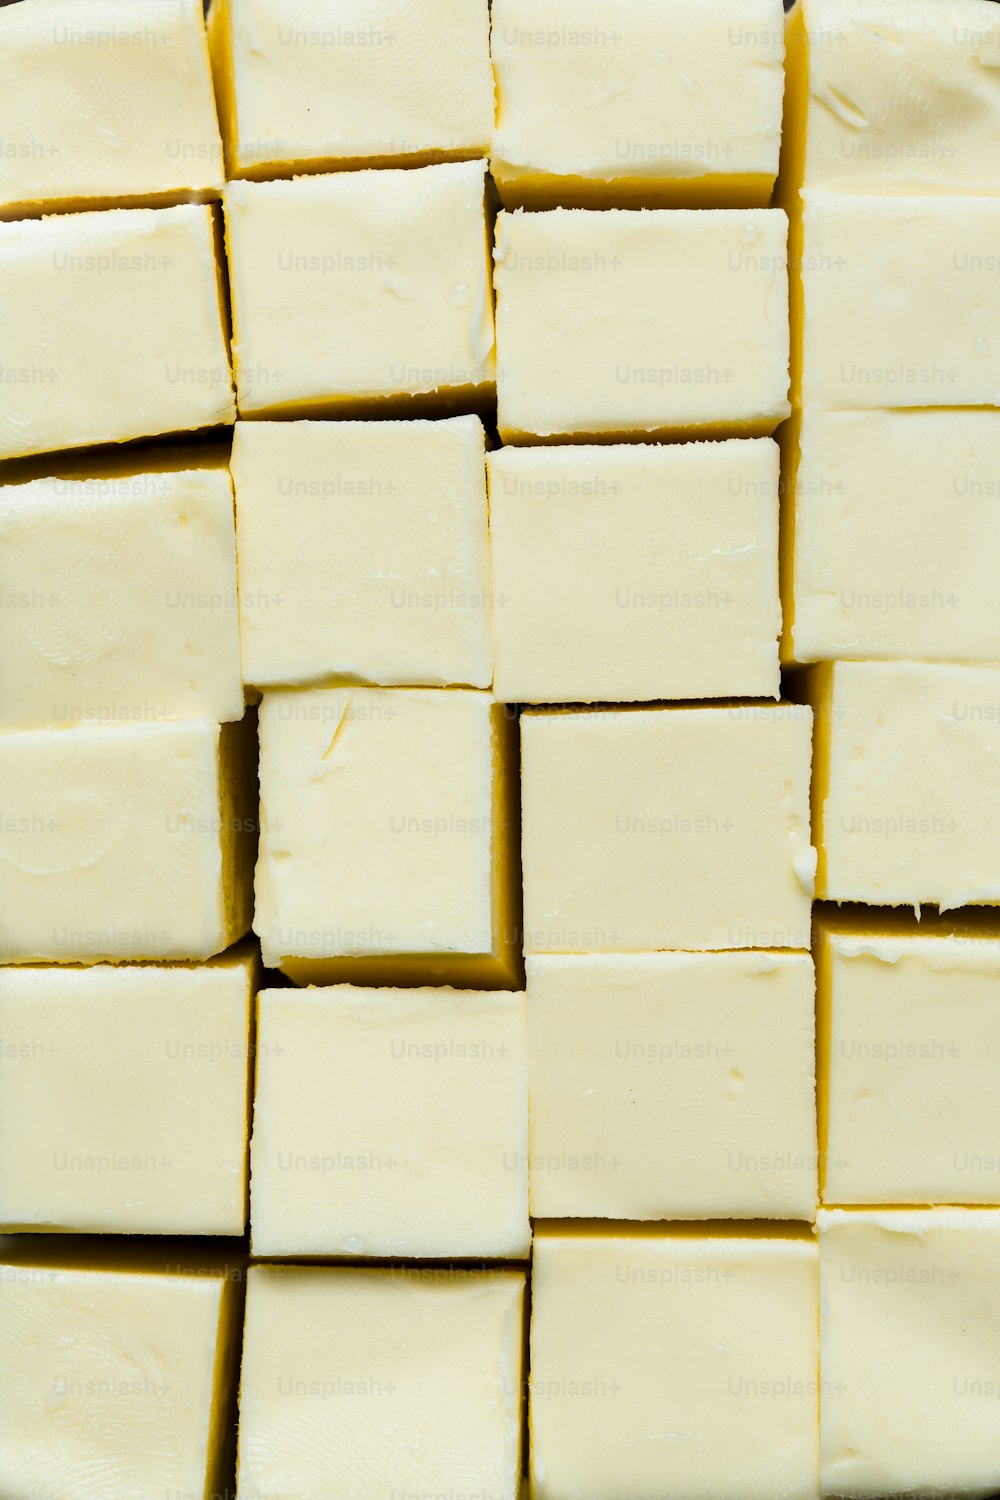 Un primer plano de muchos cuadrados de mantequilla